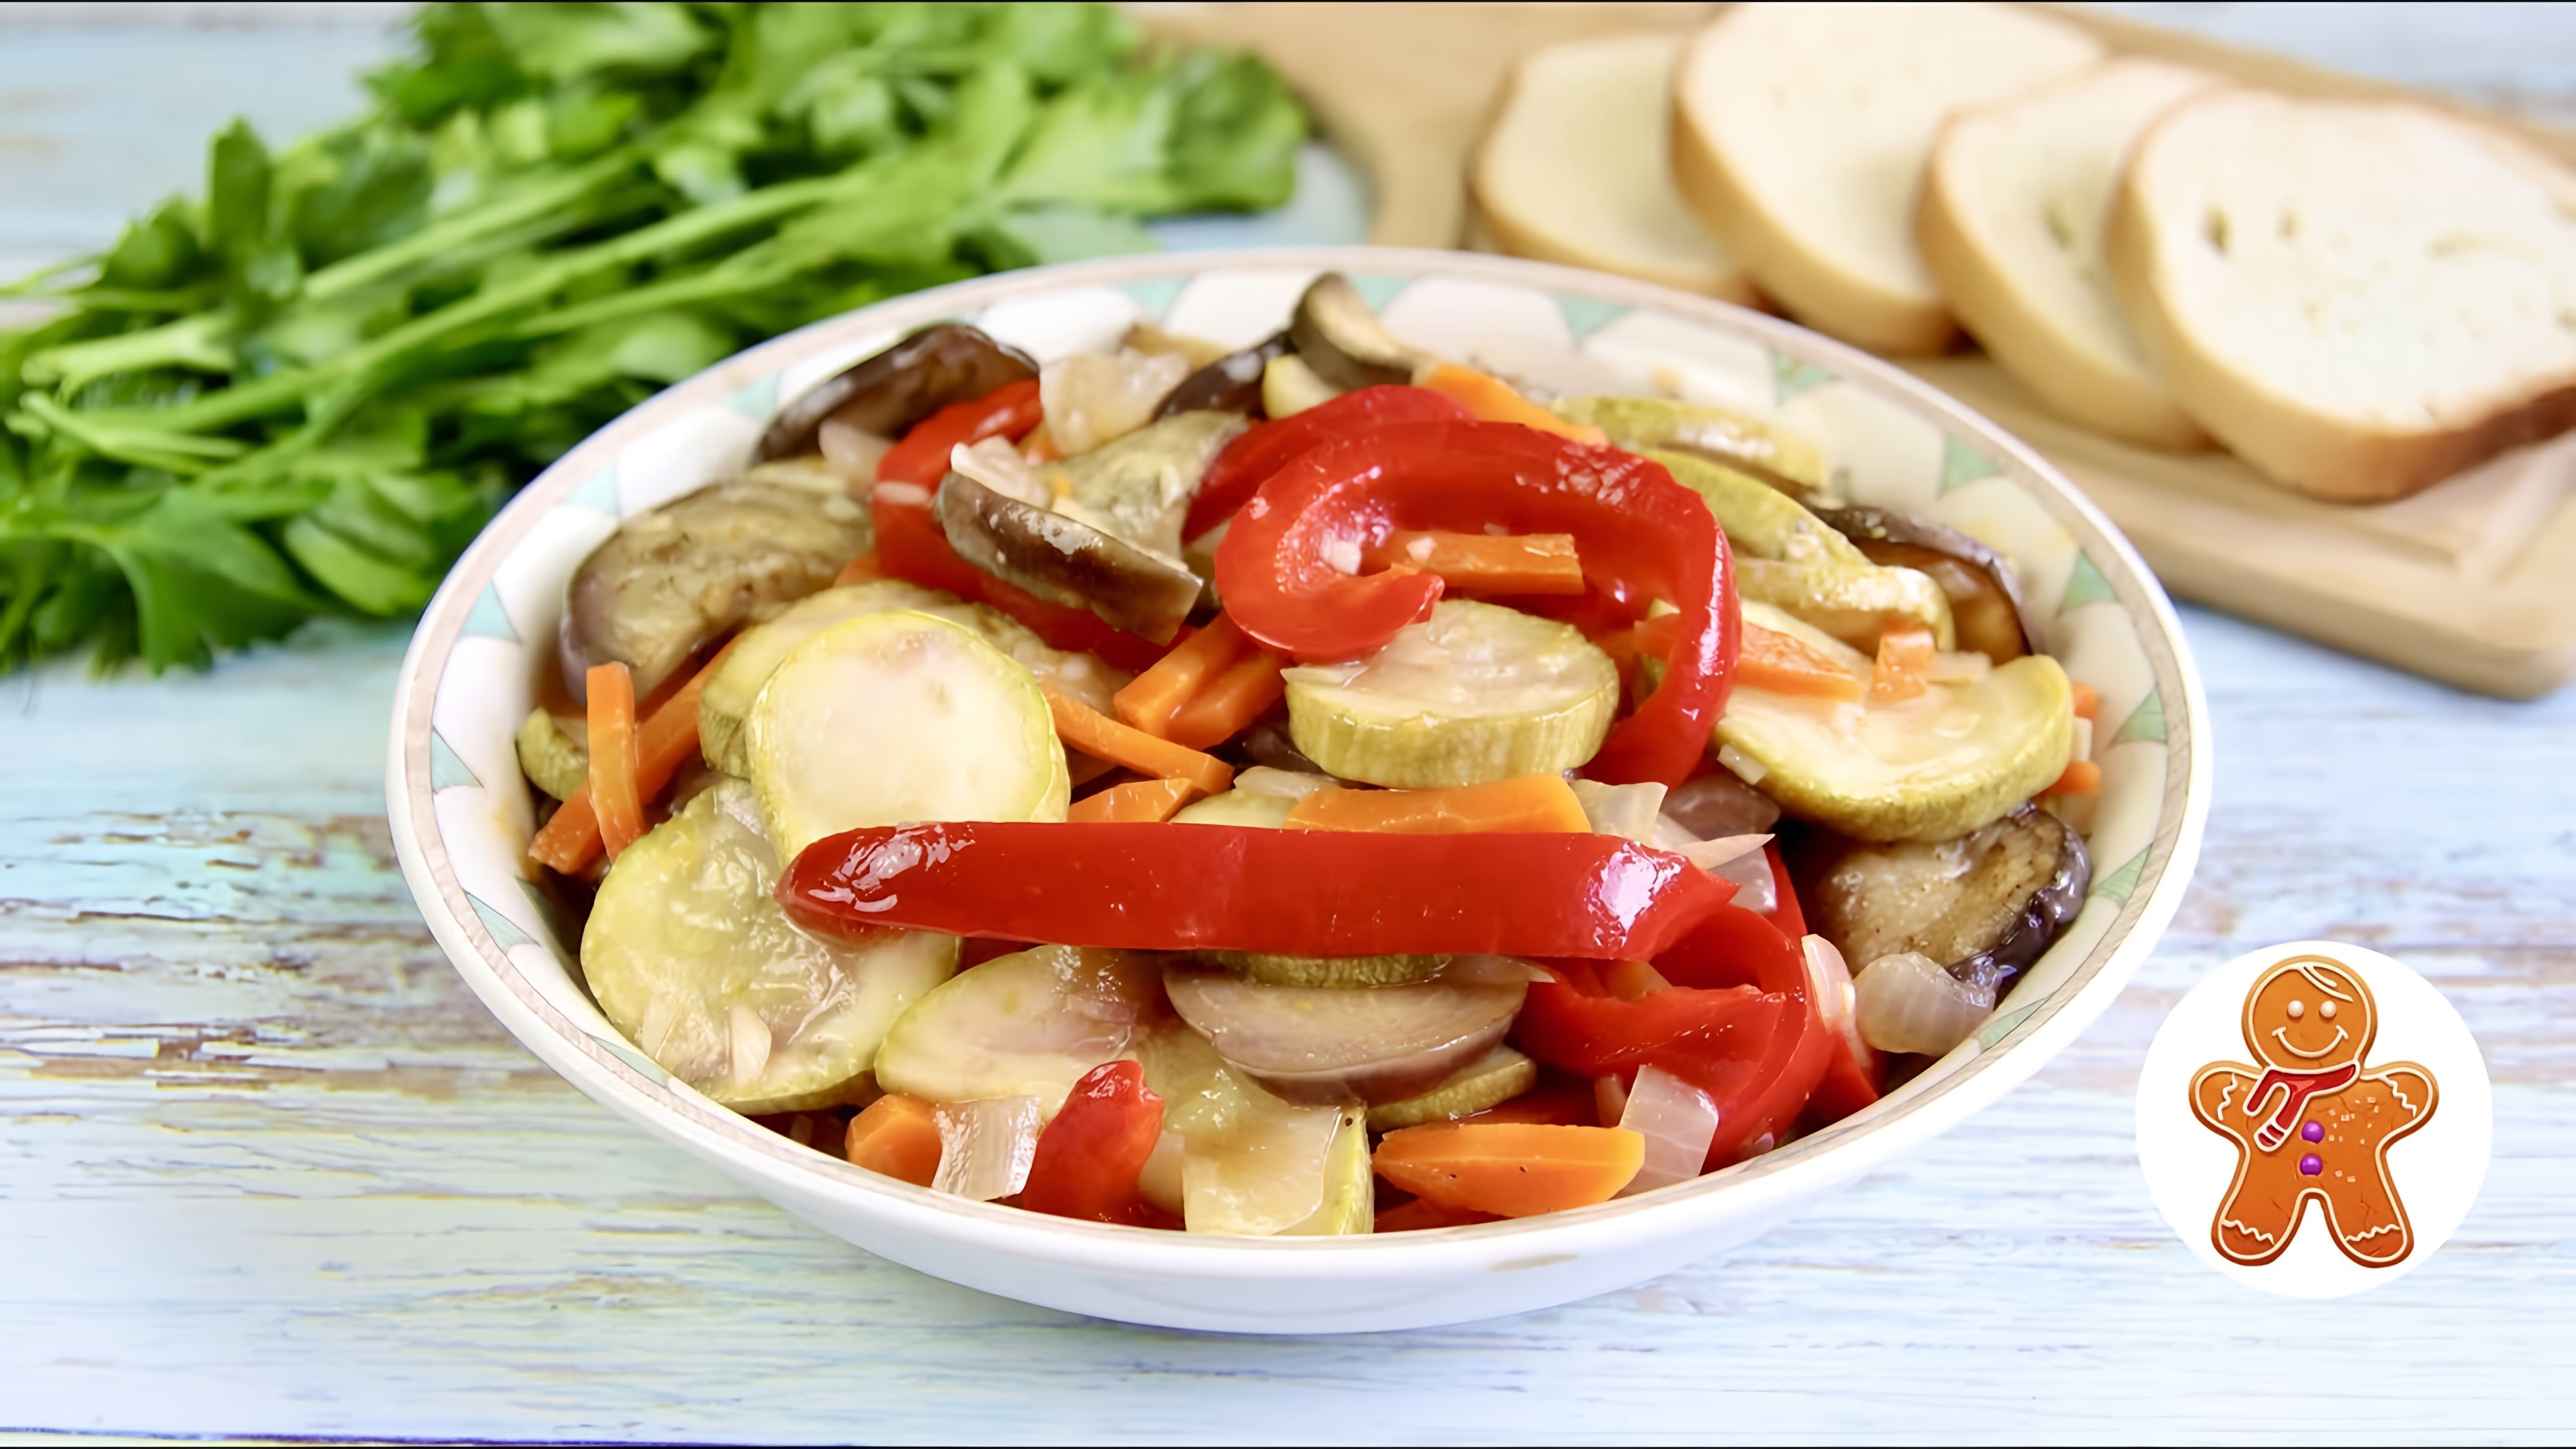 В этом видео демонстрируется процесс приготовления овощной закуски под названием "Любимая"